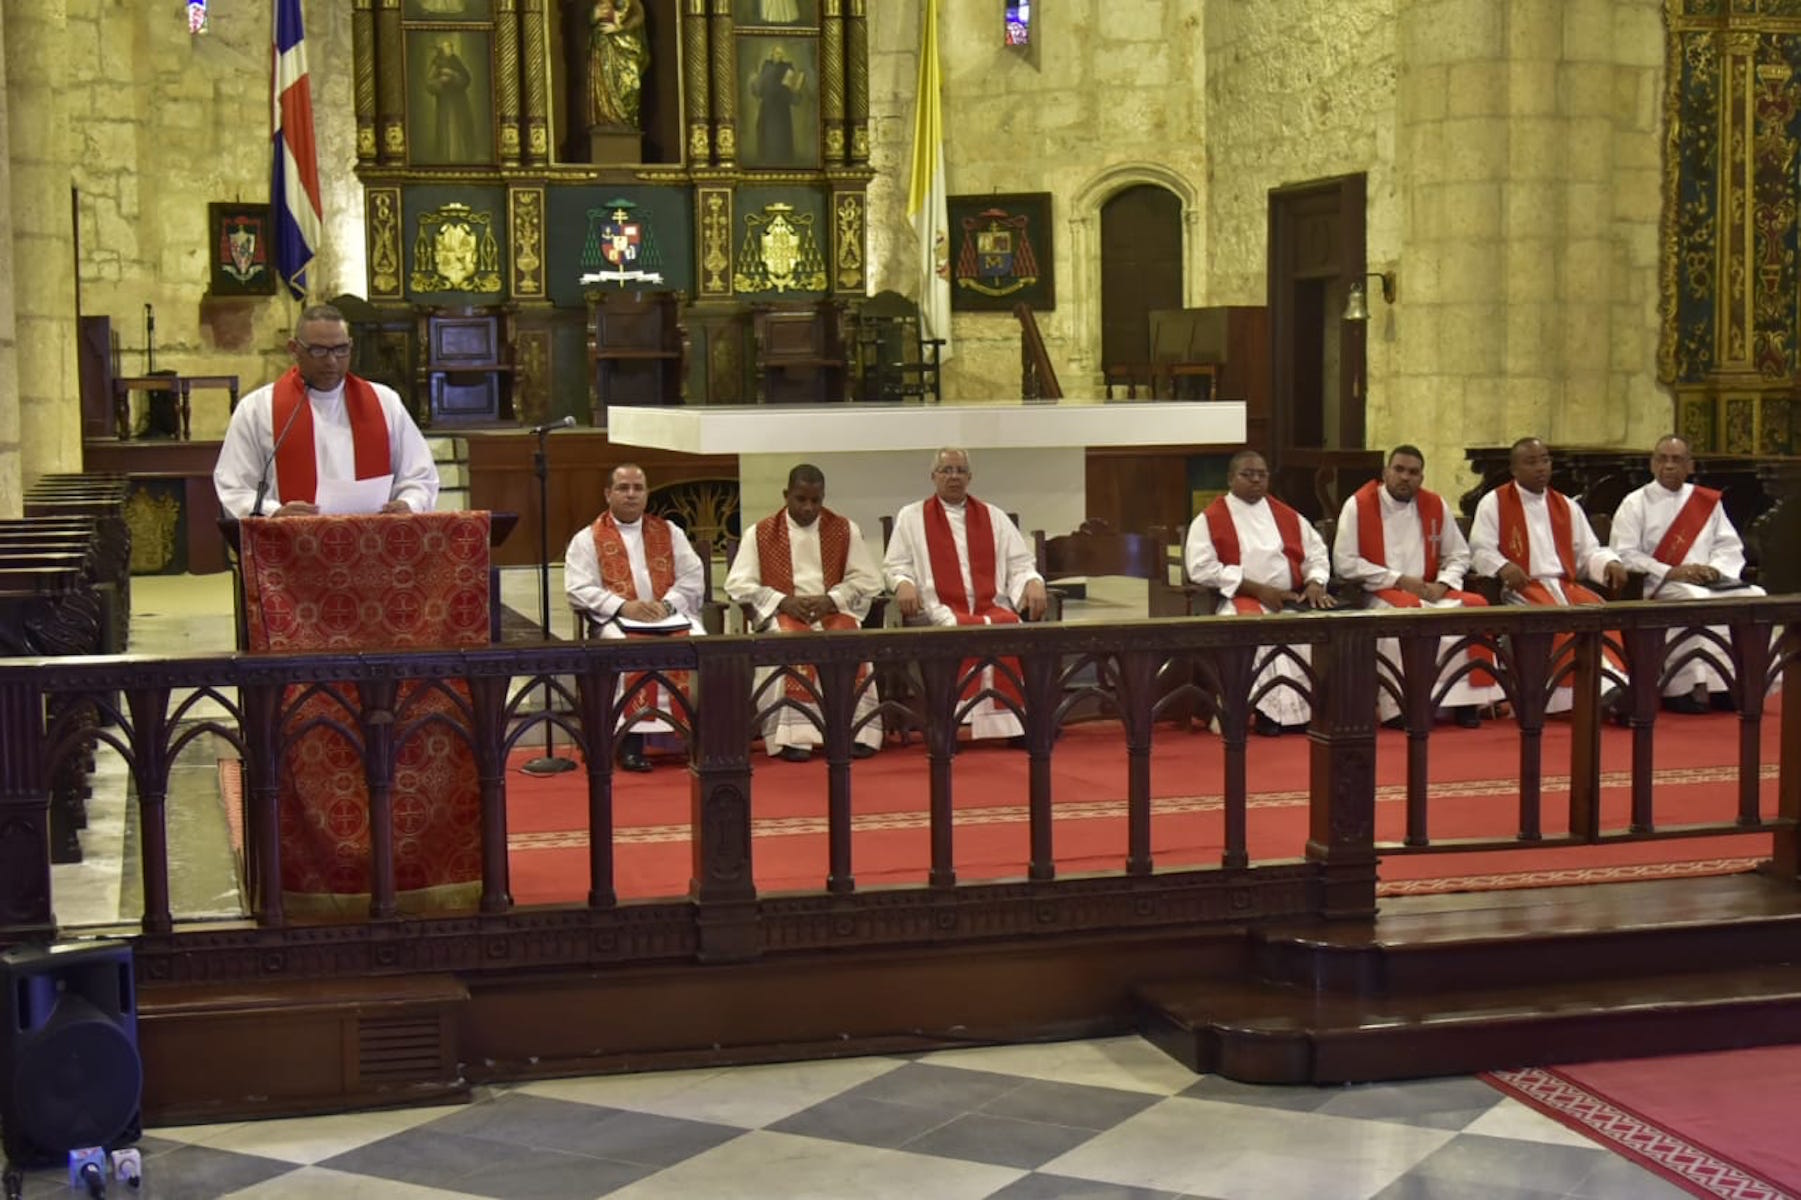 Sacerdotes toman turno para leer el Sermón de las Siete Palabras en la Catedral Primada de América de Santo Domingo, República Dominicana. Viernes 19 de abril de 2019.